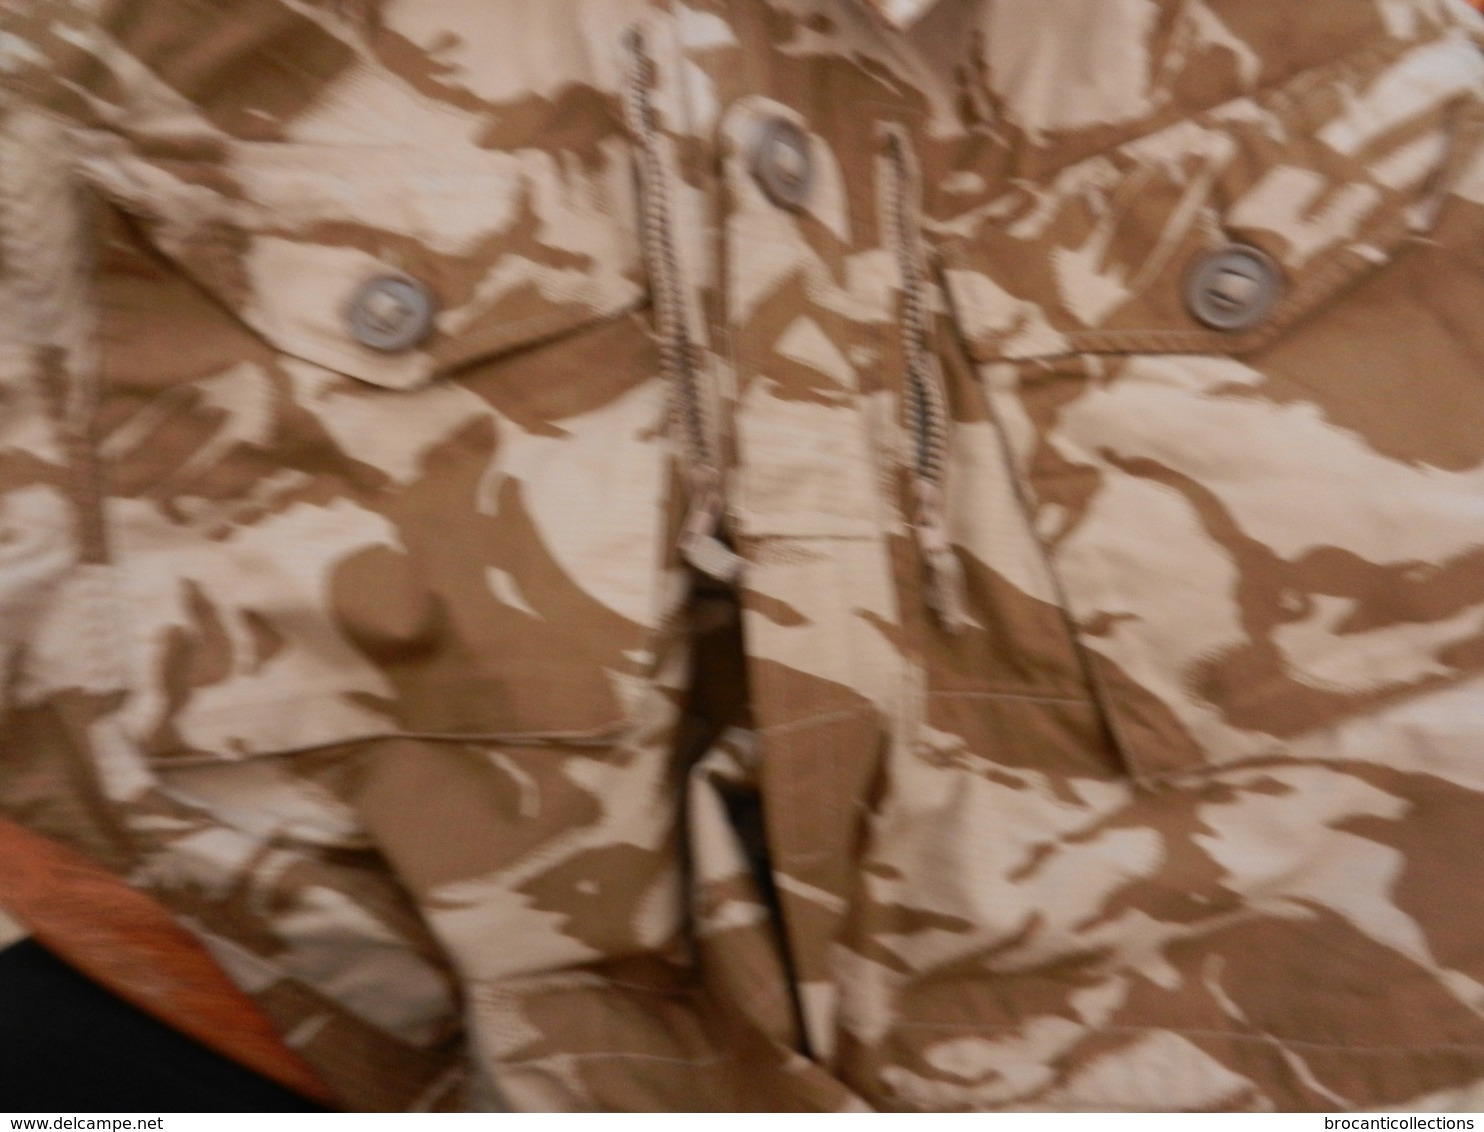 Veste militaire camouflée désert - Air soft - paintball - chasse